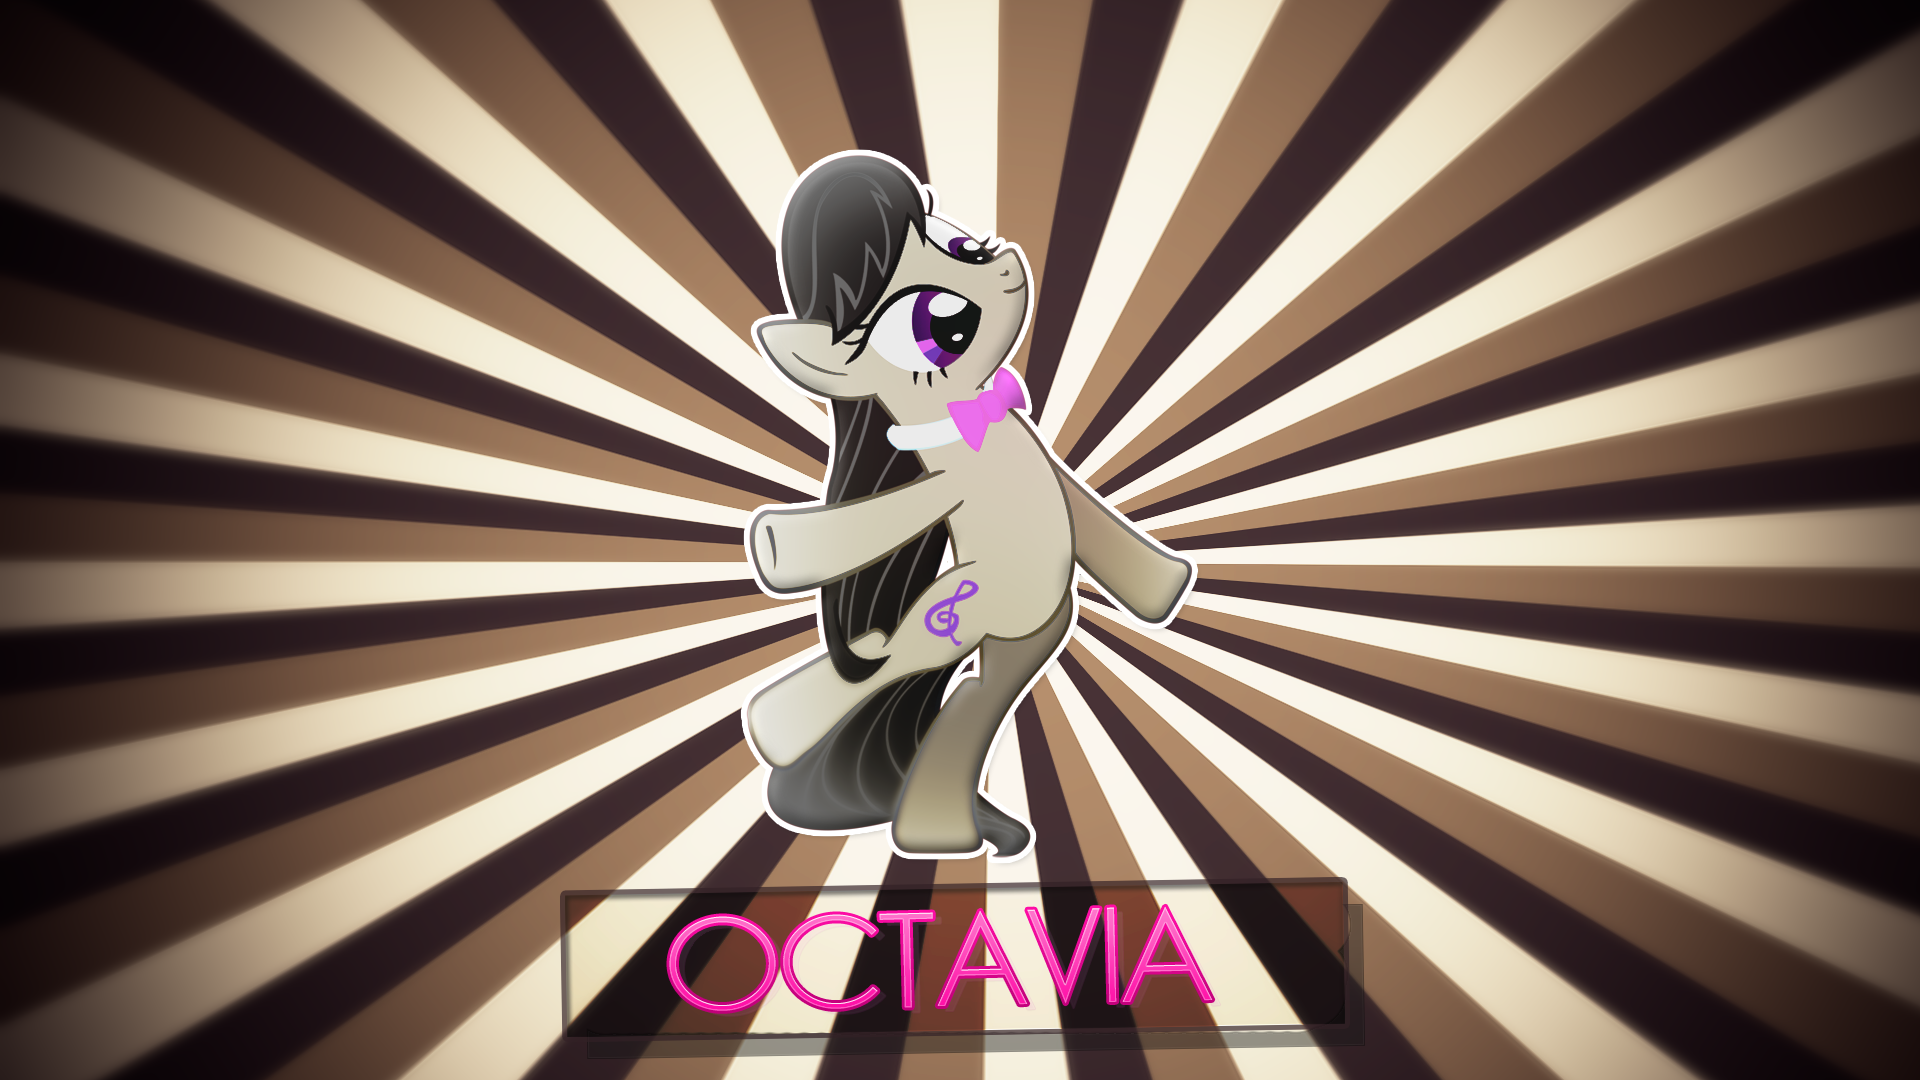 Octavia - Wallpaper by NinjamissenDk and Rainbowb4sh